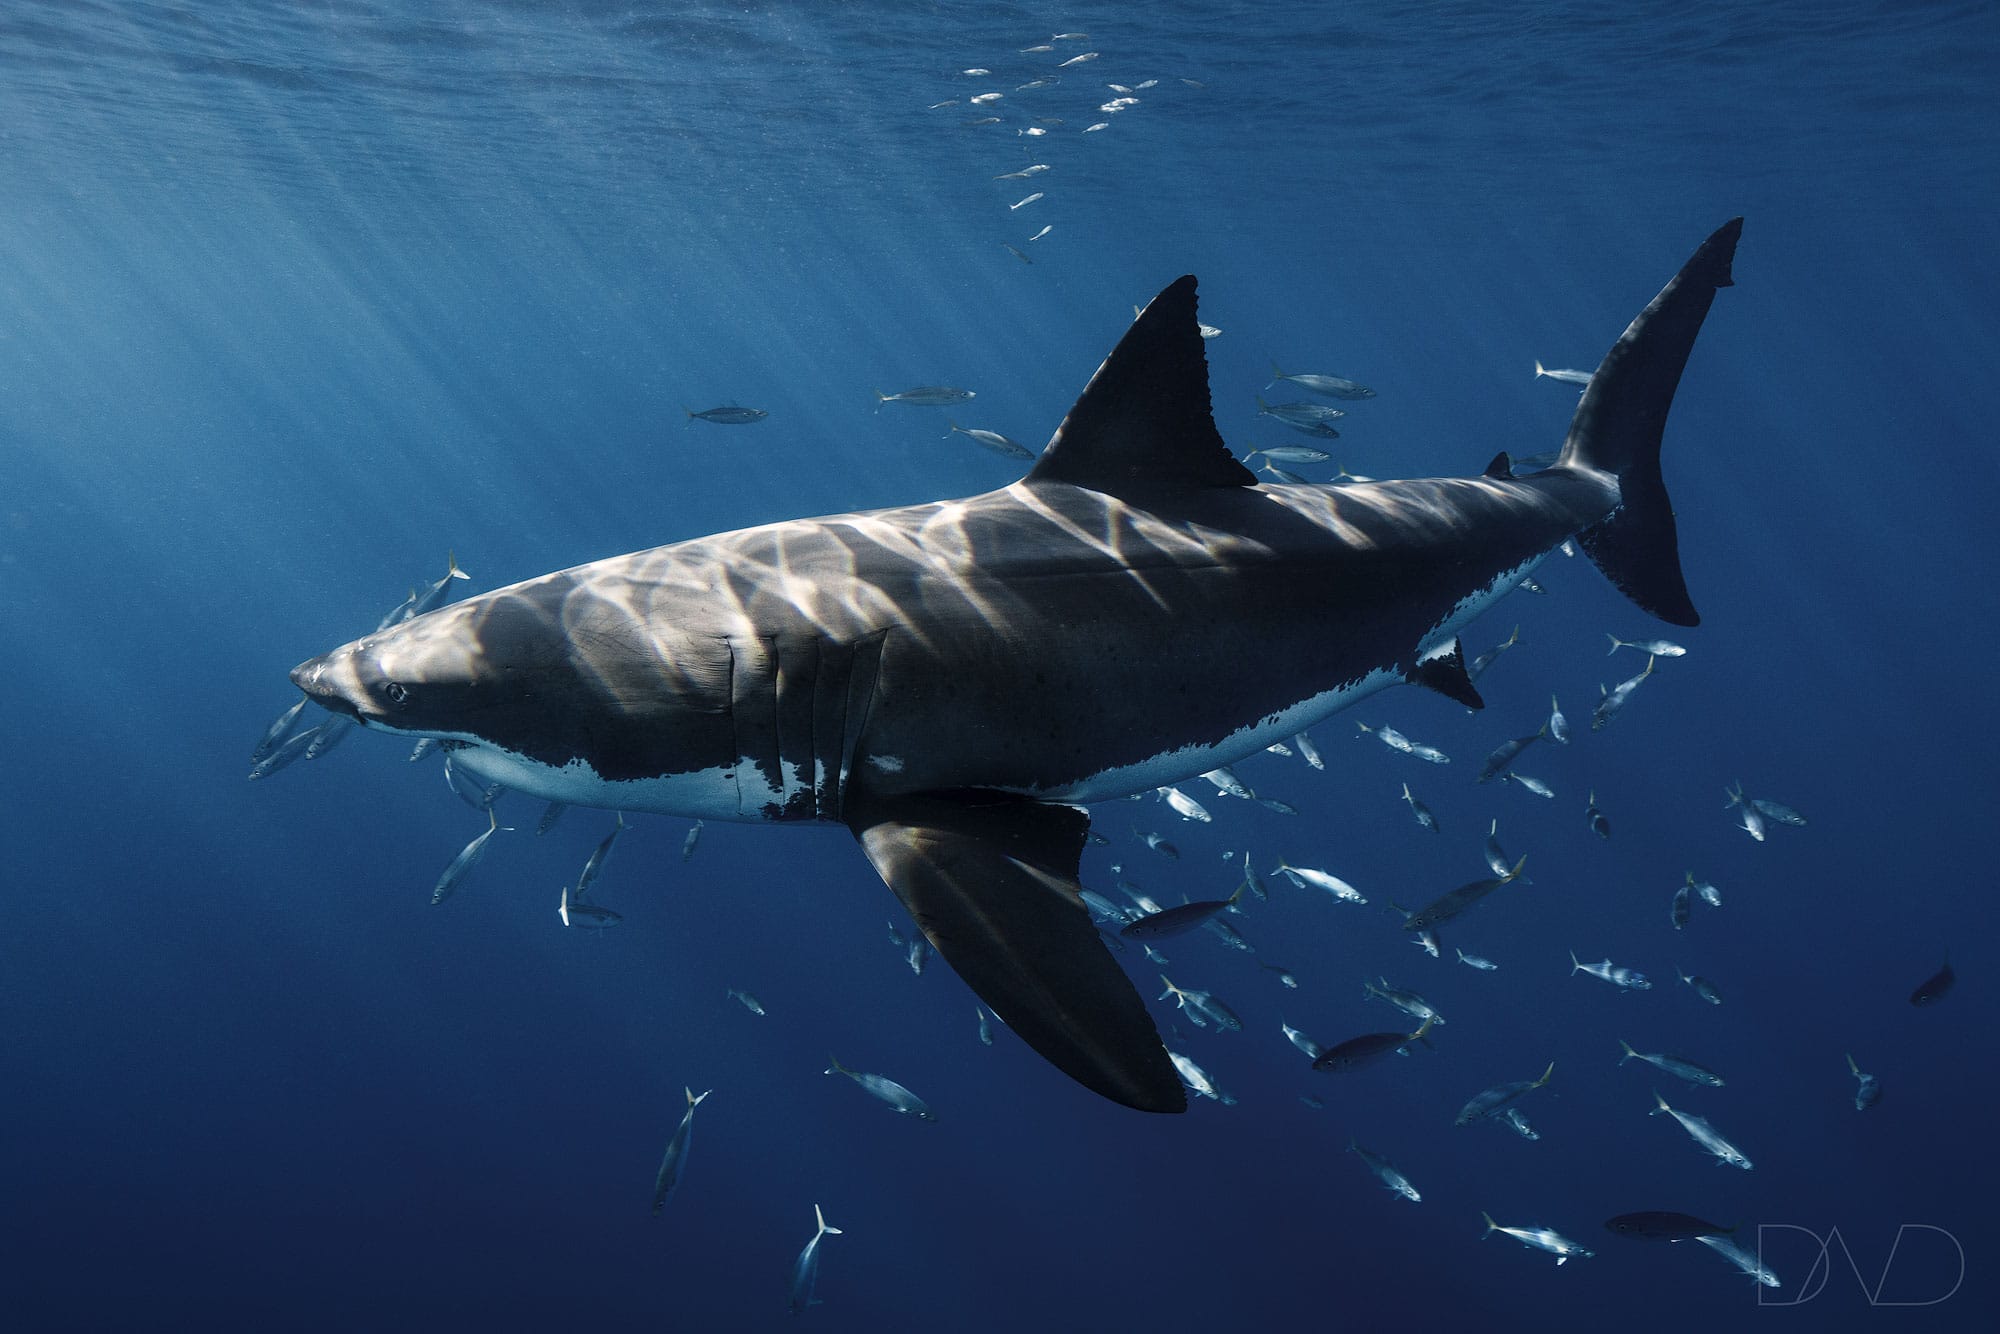 great white shark offspring